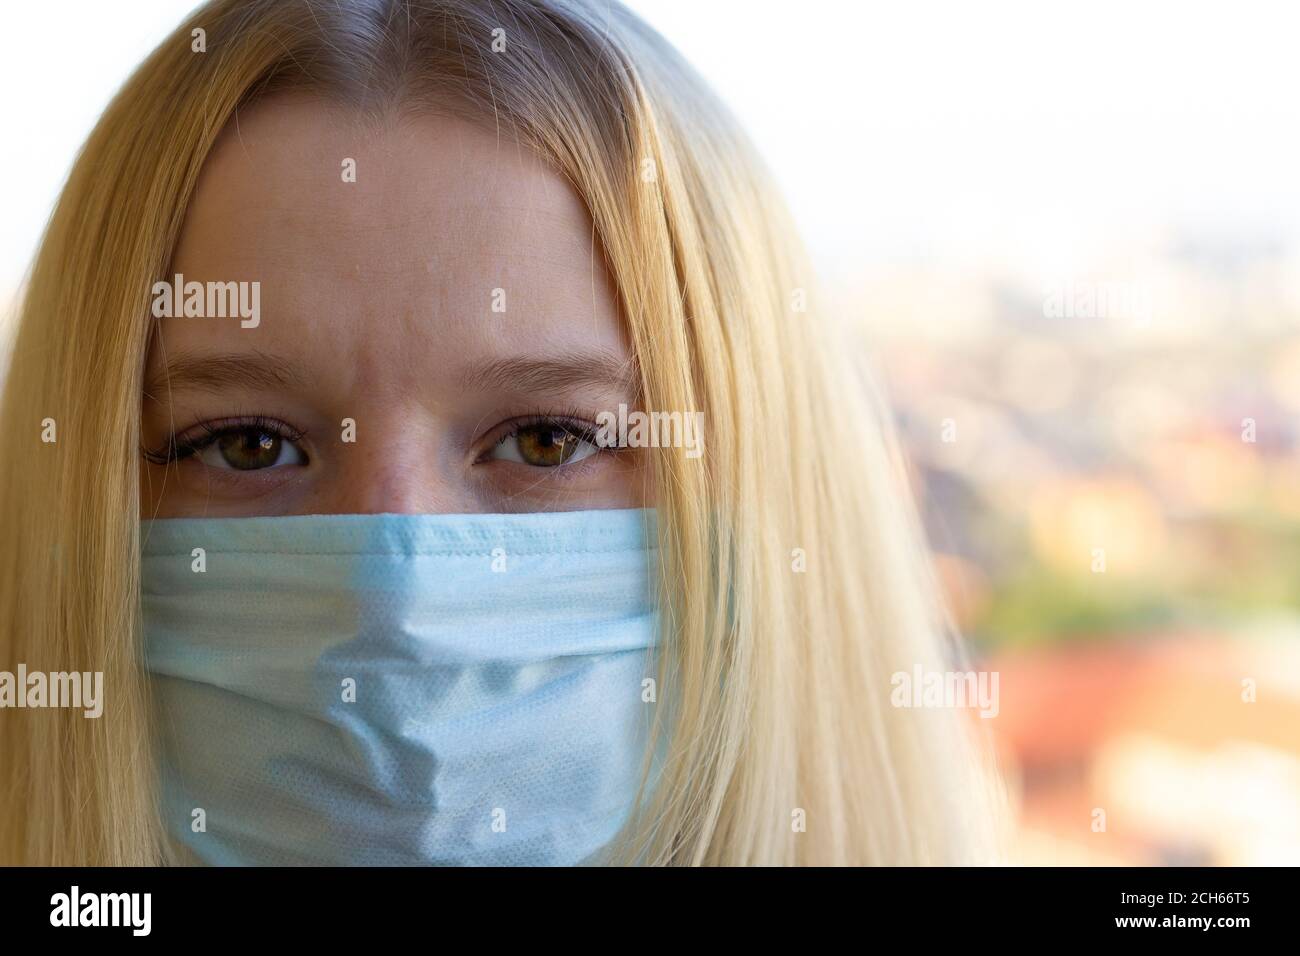 Portrait de jeune femme avec masque médical, fond de ville flou. Concept pendant la prévention du covid-19 pandémie mondiale de coronavirus. Banque D'Images